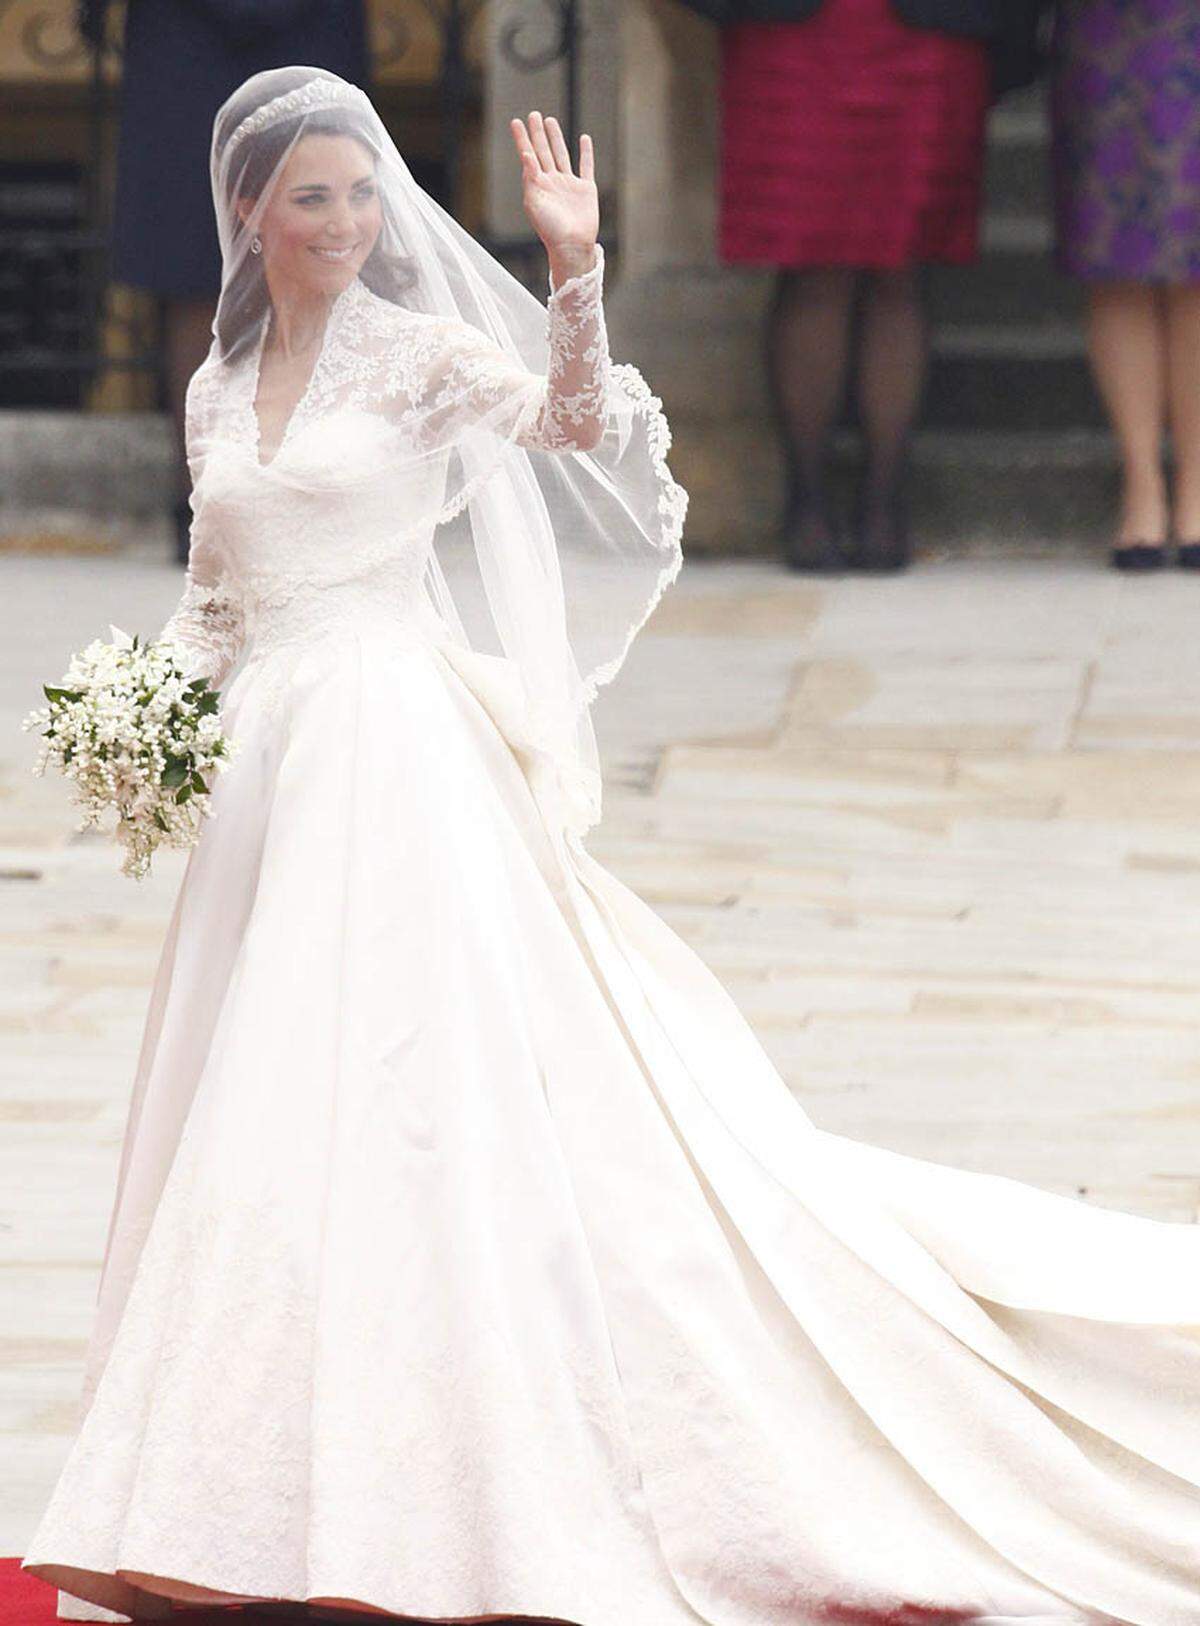 Der Modeschöpfer Karl Lagerfeld fühlt sich von dem Brautkleid Kates aus dem britischen Modehaus Alexander McQueen an die 50er Jahre erinnert. Das Kleid habe einen "Hauch der 50er", der ihn an Marilyn Monroe oder an das Brautkleid von Königin Elizabeth II. denken lasse.